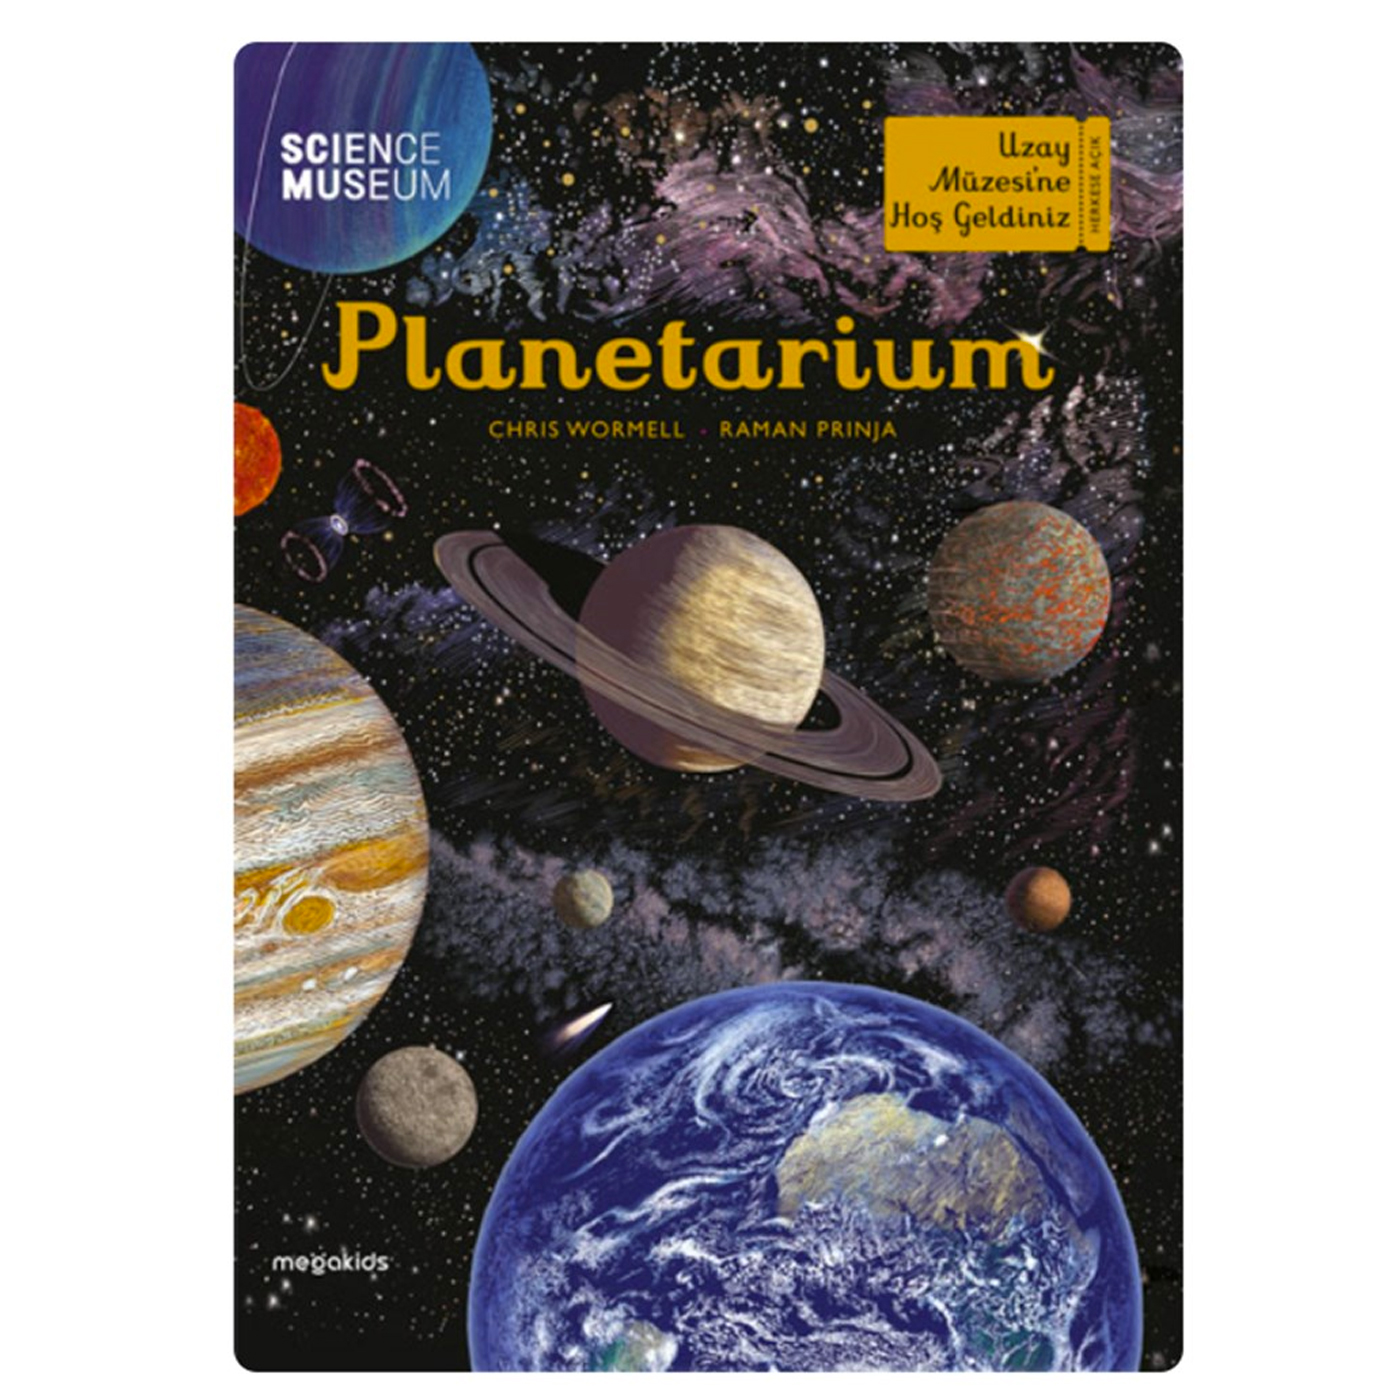  Planetarium